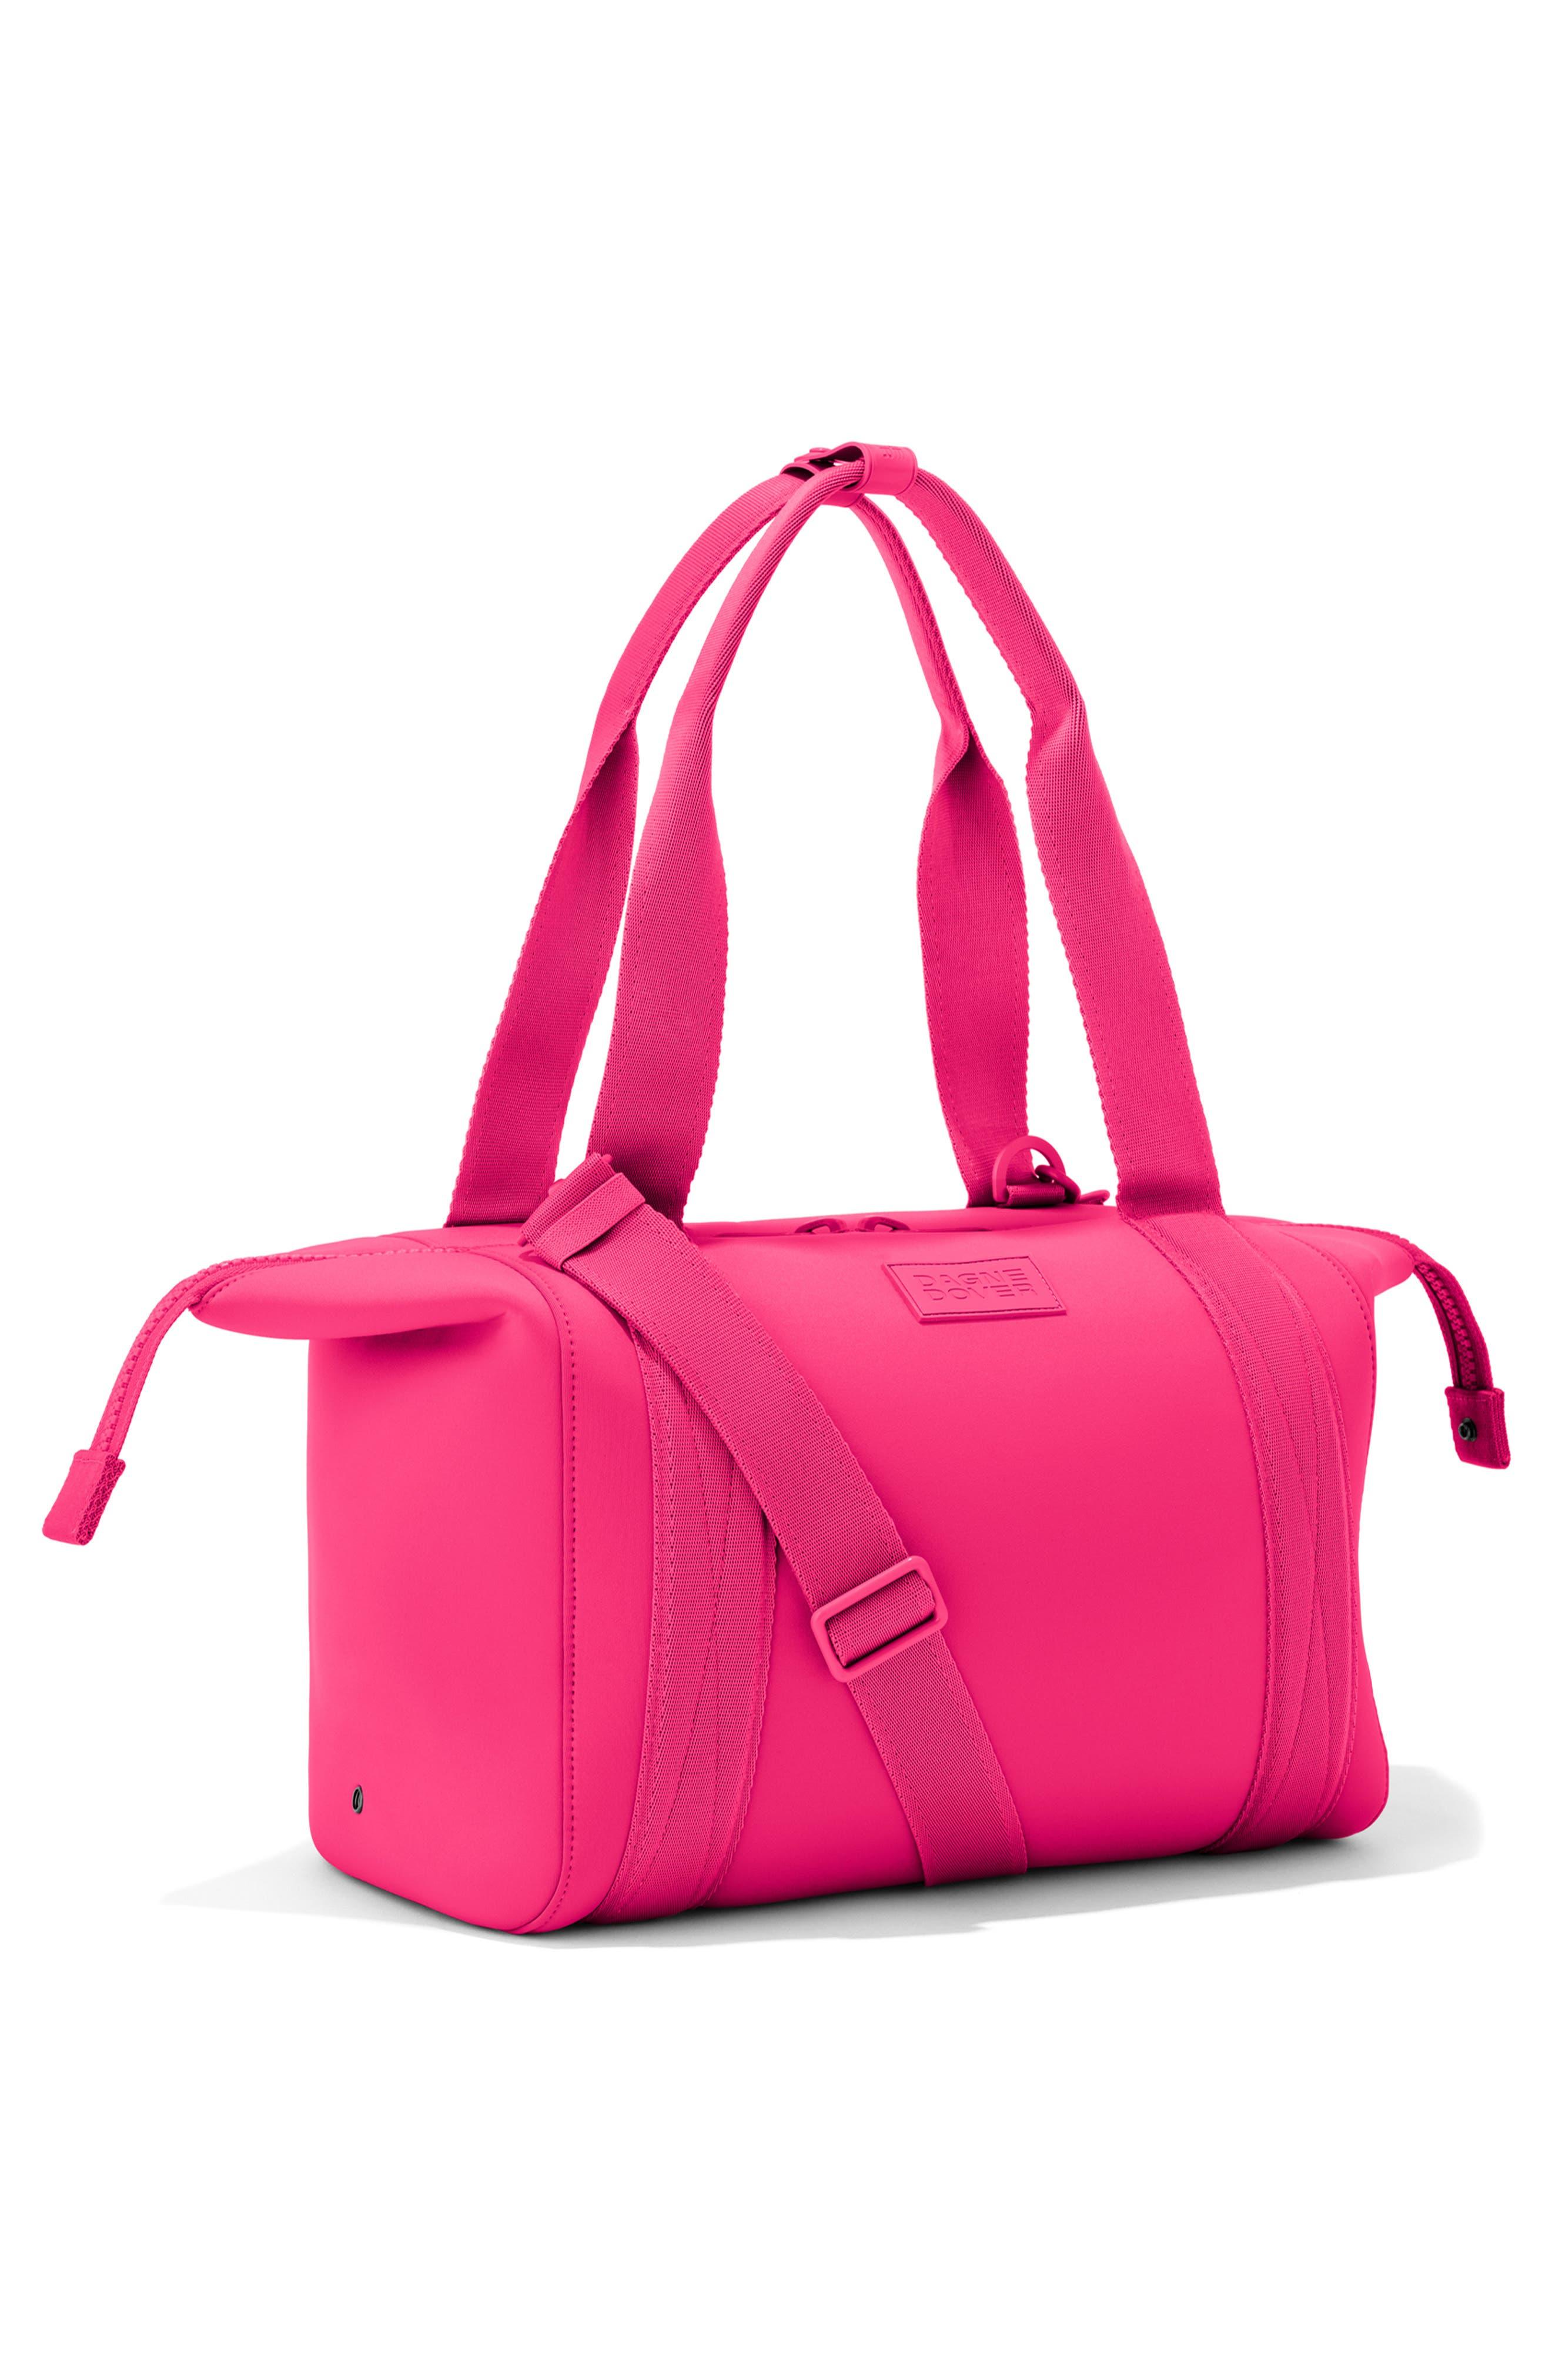 Dagne Dover Medium Landon Neoprene Carryall Duffle Bag In Pinkish